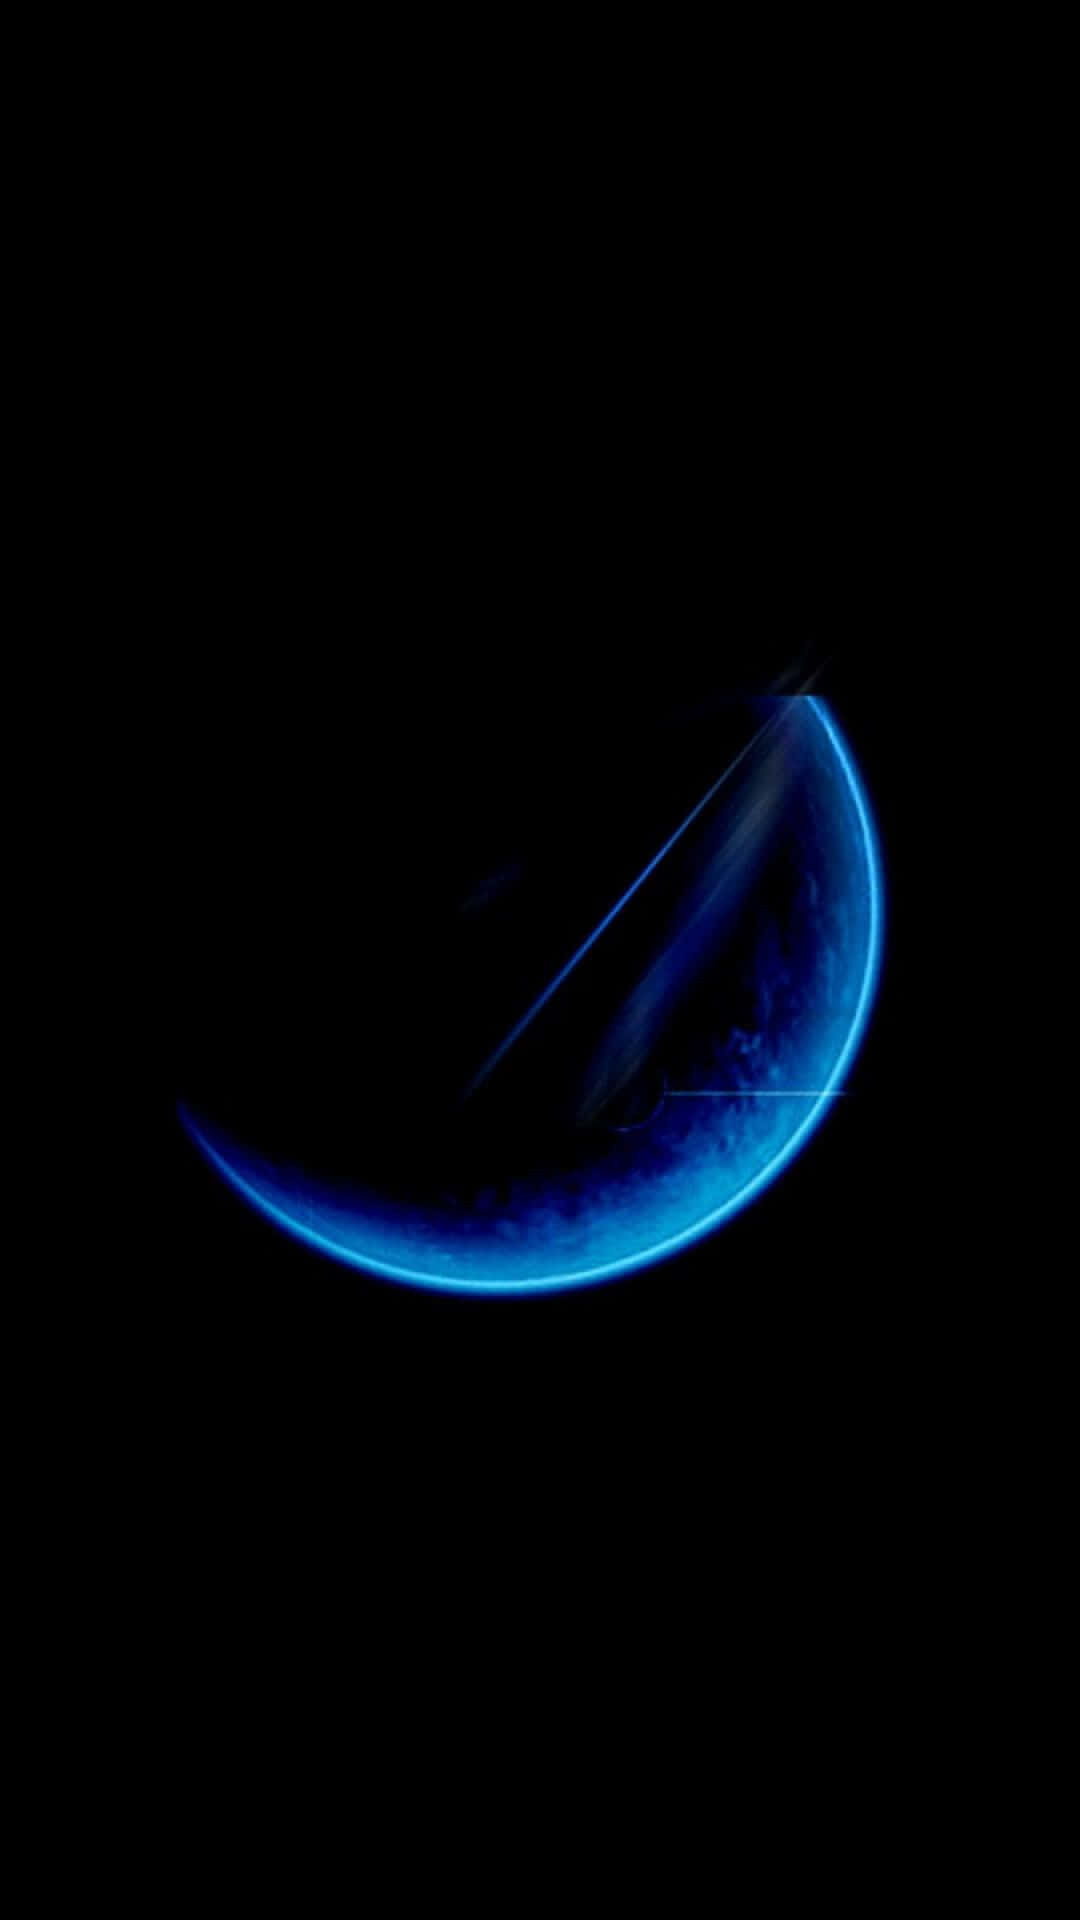 Hochauflösendeschwarze Hintergrundbilder Mit Blauem Mond